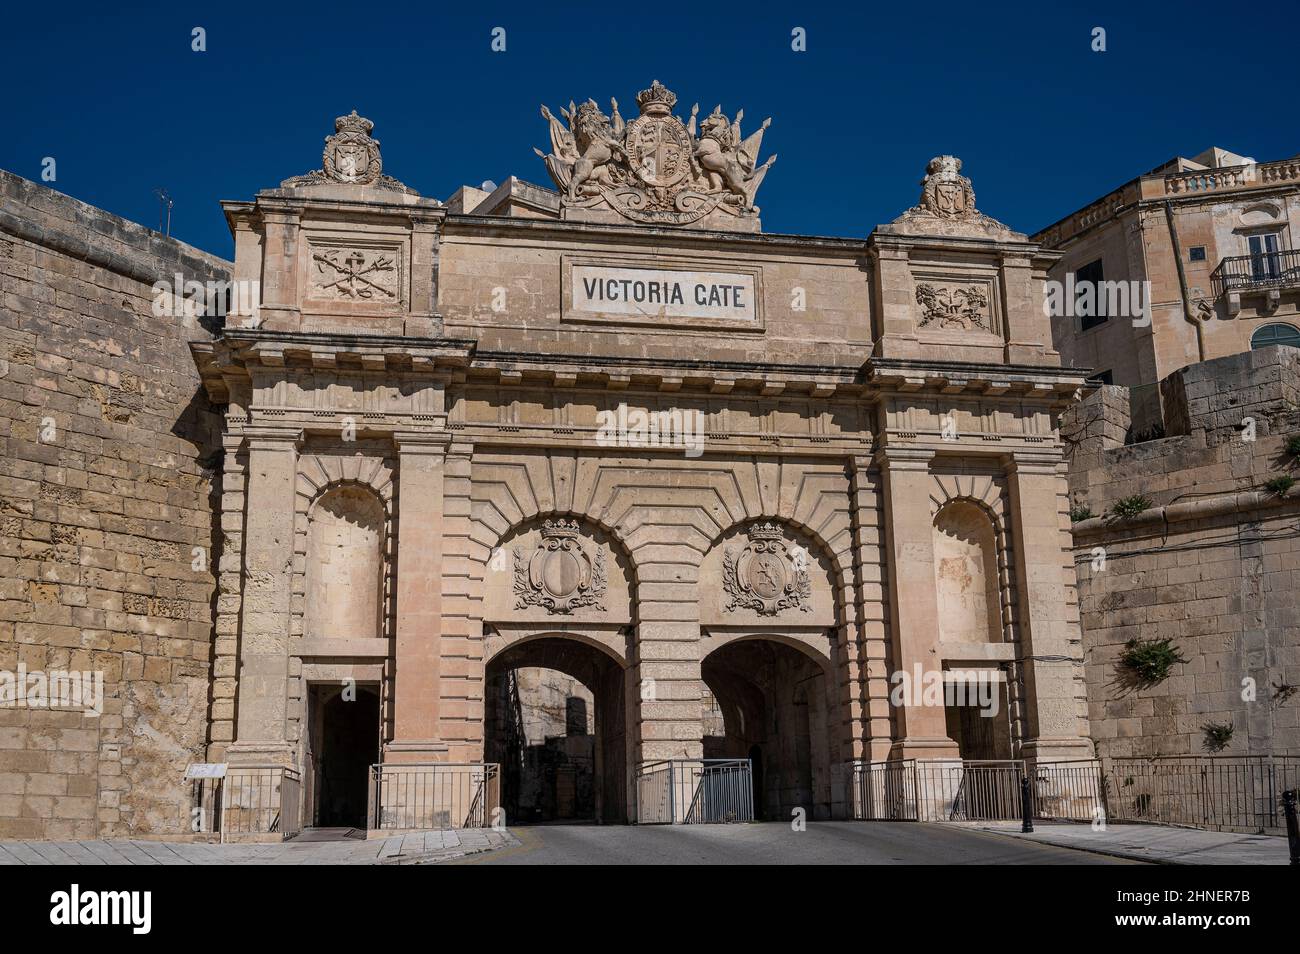 Victoria gate in Valletta, Malta Stock Photo